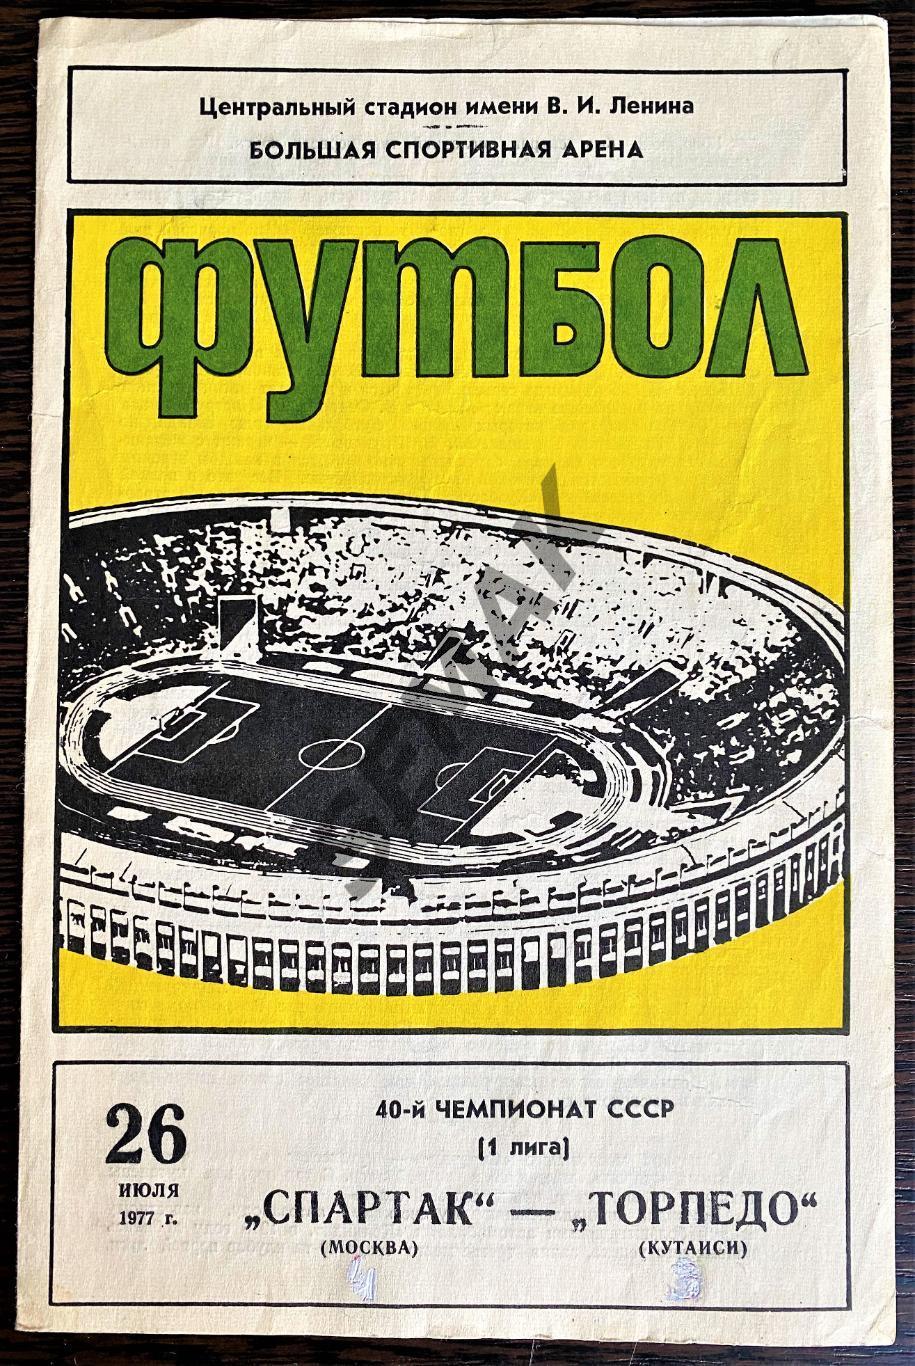 Спартак Москва - Торпедо Кутаиси - 26.07.1977